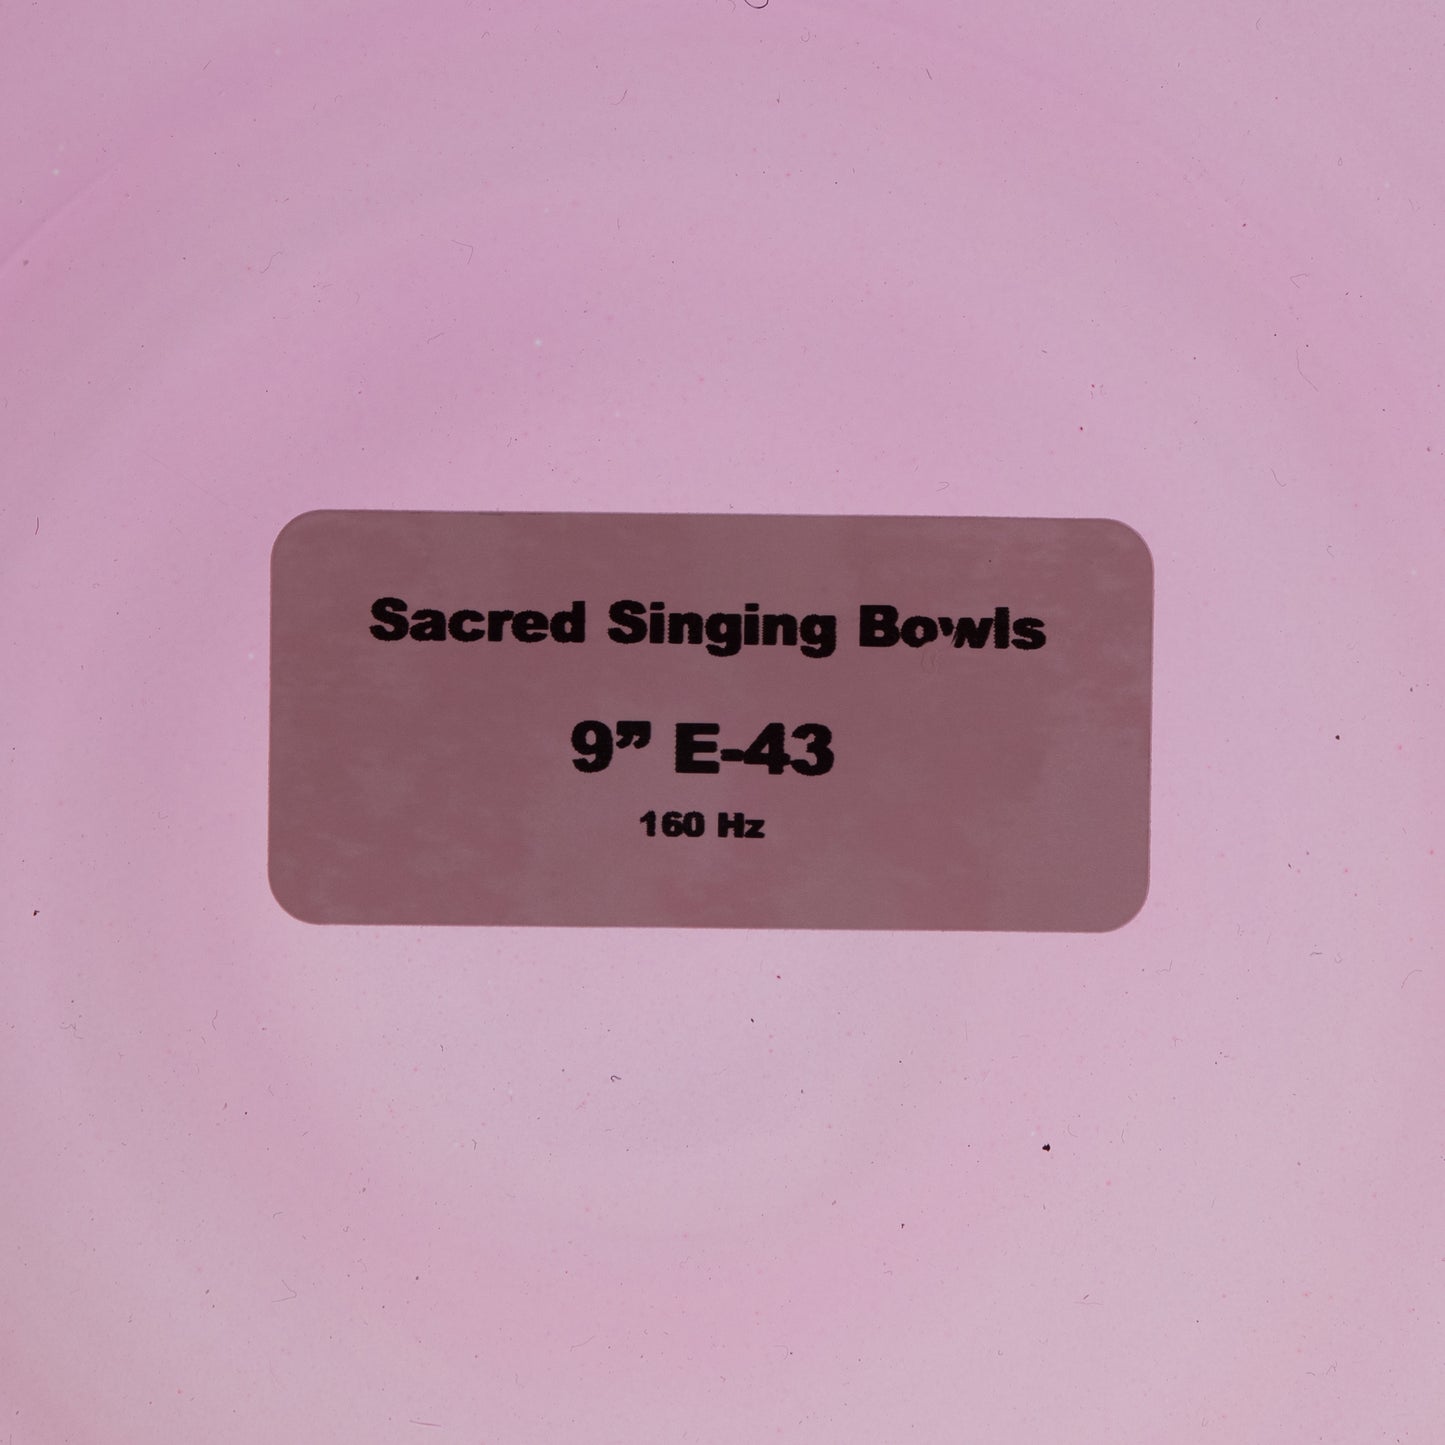 9" E-43 Harmonic Sunrise Crystal Singing Bowl, Sacred Singing Bowls